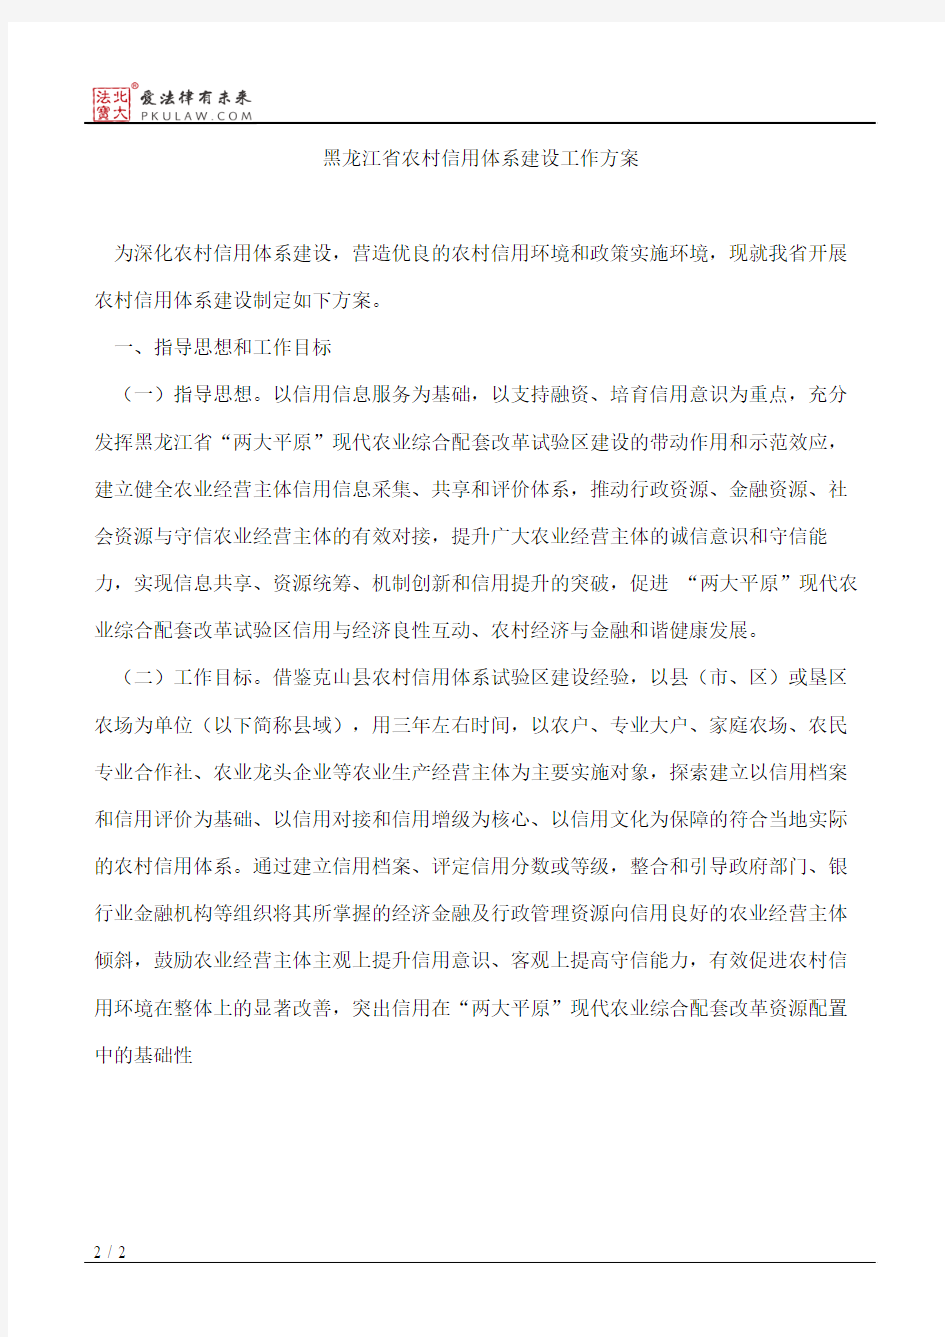 黑龙江省人民政府关于印发黑龙江省农村信用体系建设工作方案的通知